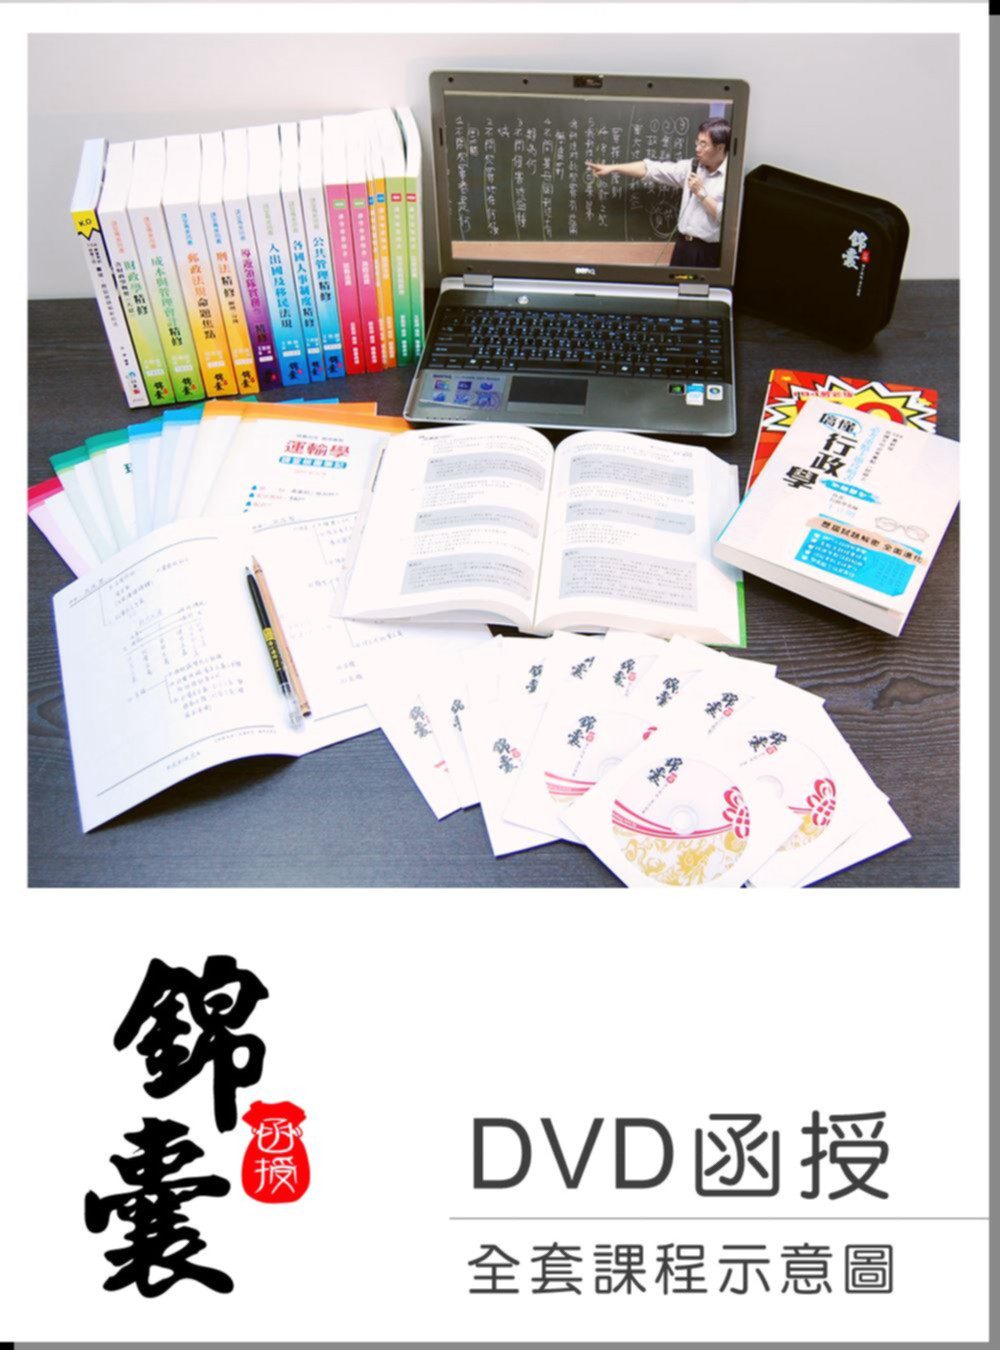 【DVD函授】郵政法規(105版)